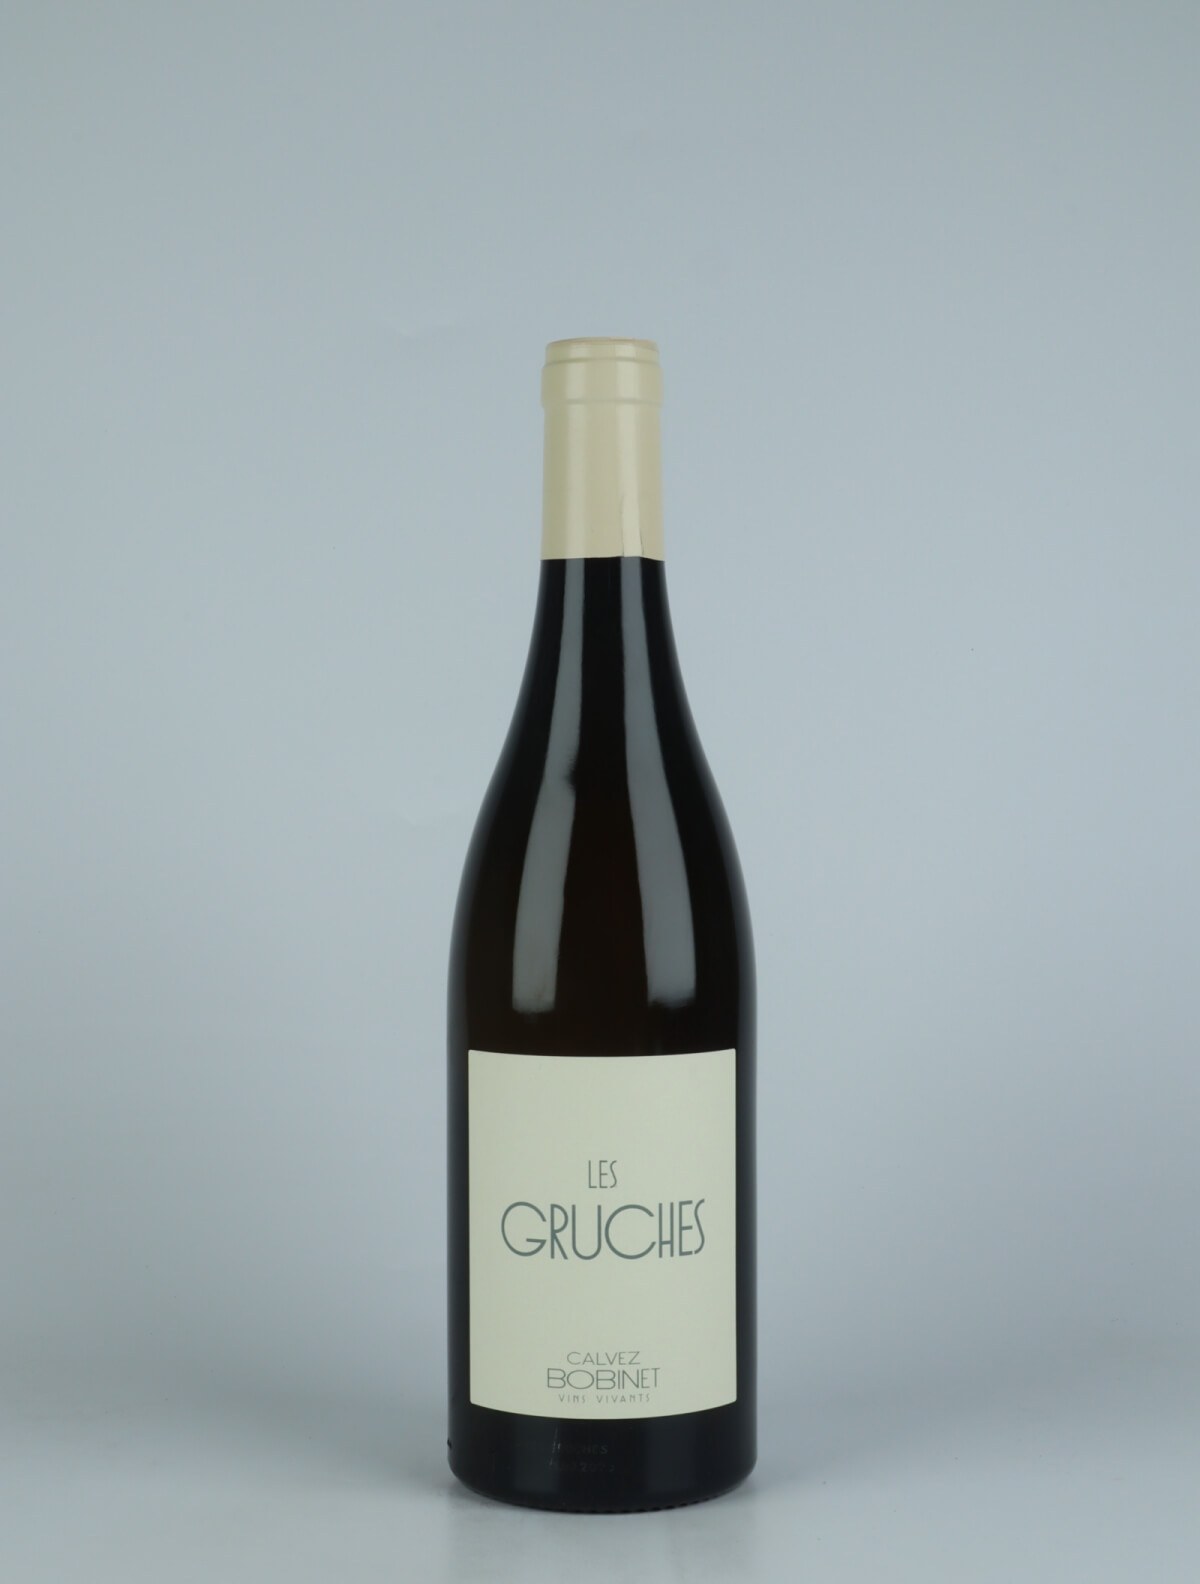 En flaske 2020 Saumur Blanc - Les Gruches Hvidvin fra Domaine Bobinet, Loire i Frankrig